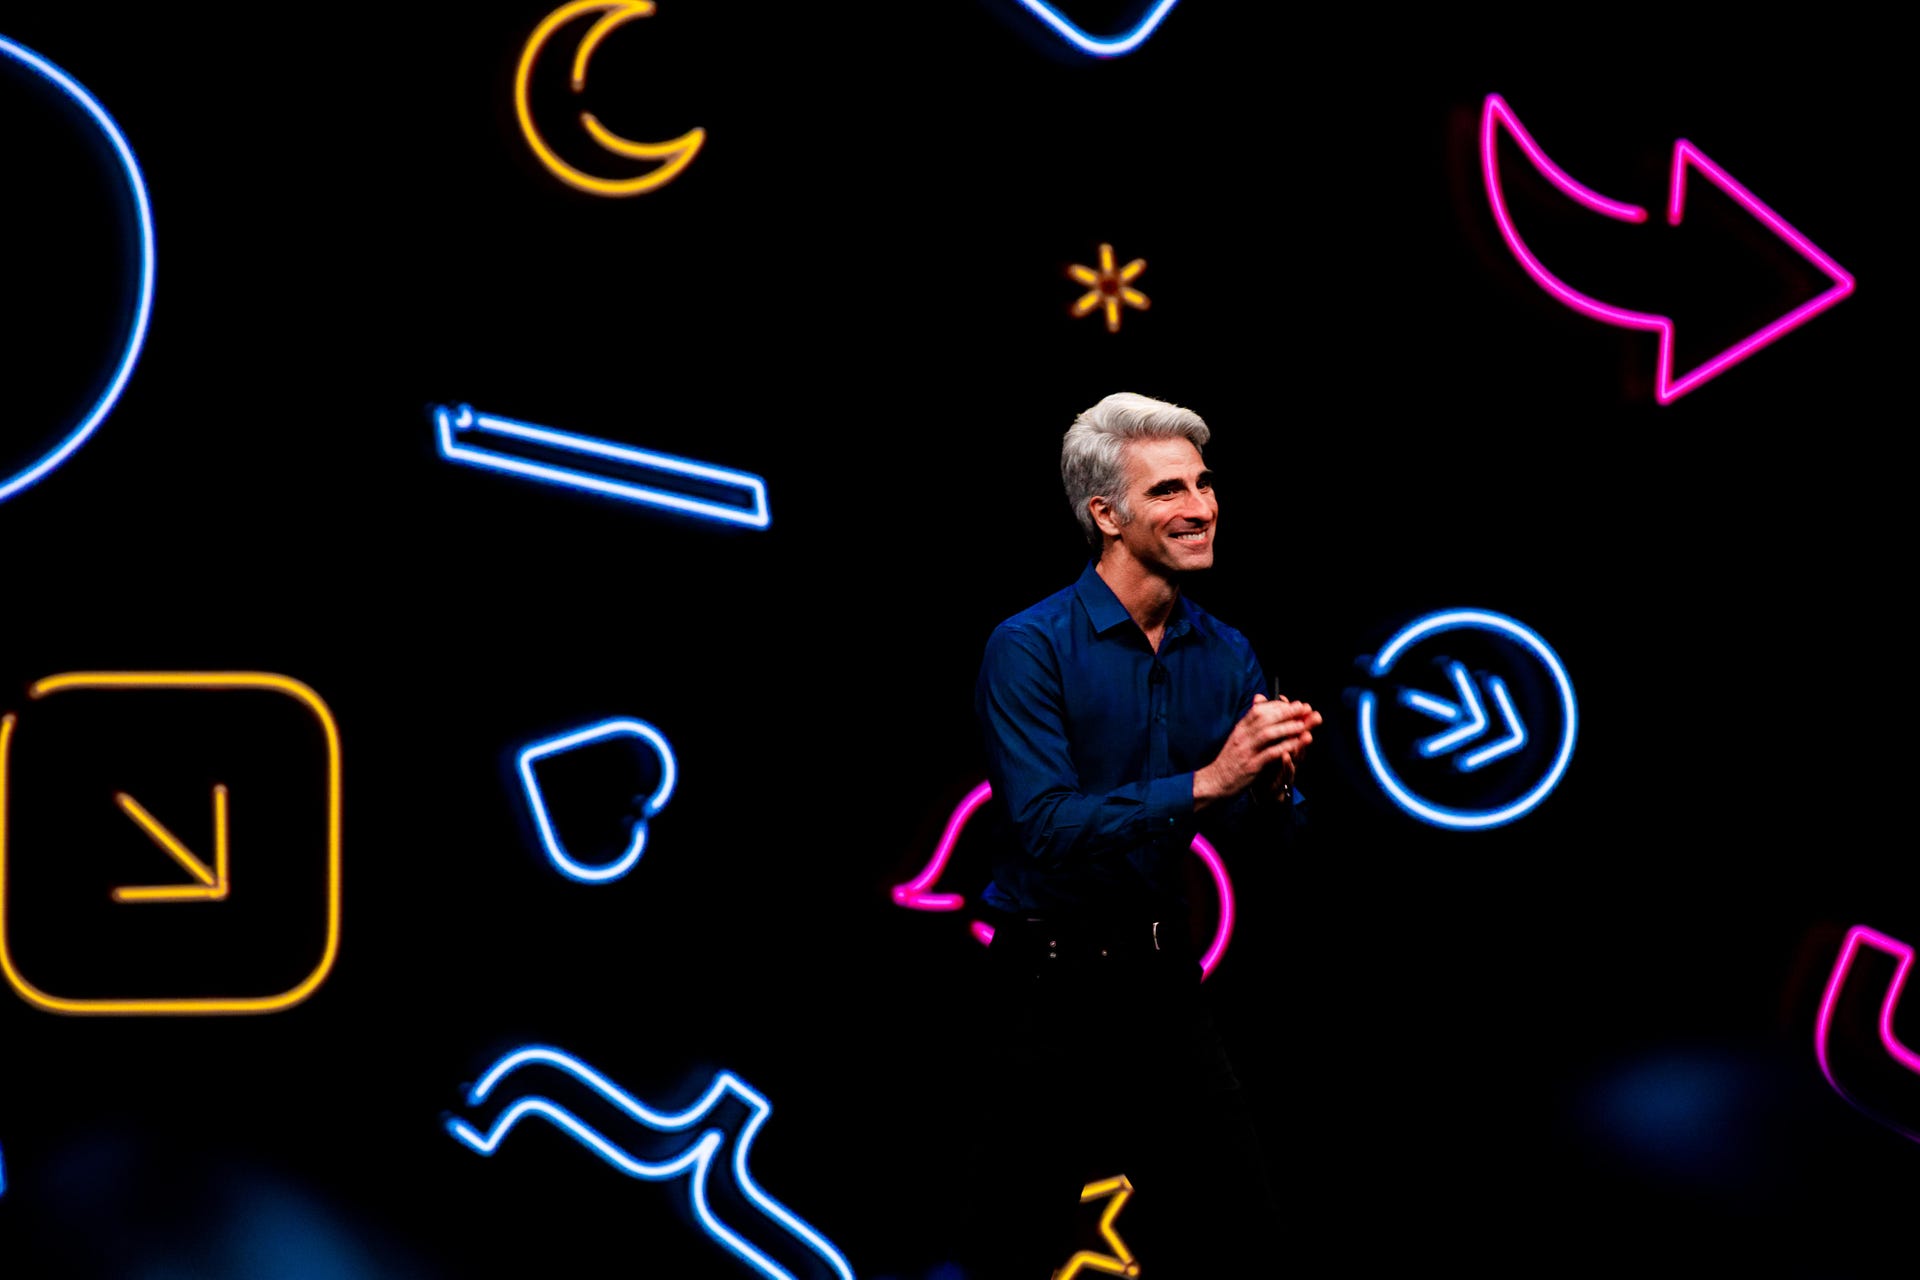 Craig Federighi at WWDC 2019